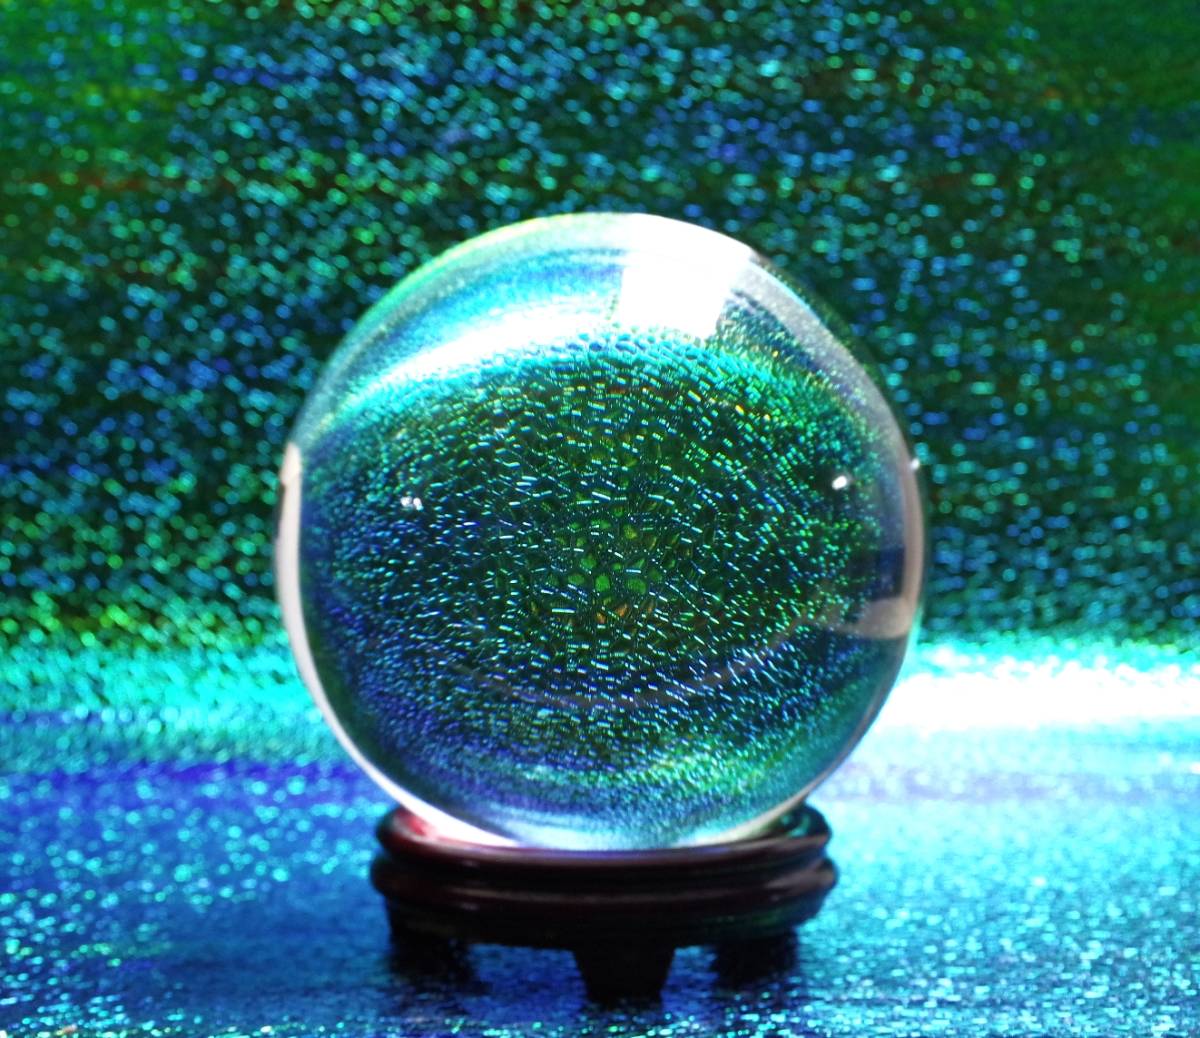 K9透明水晶光球球厂家批发人造白色水晶球摆件拍摄道具礼品工艺品-阿里巴巴